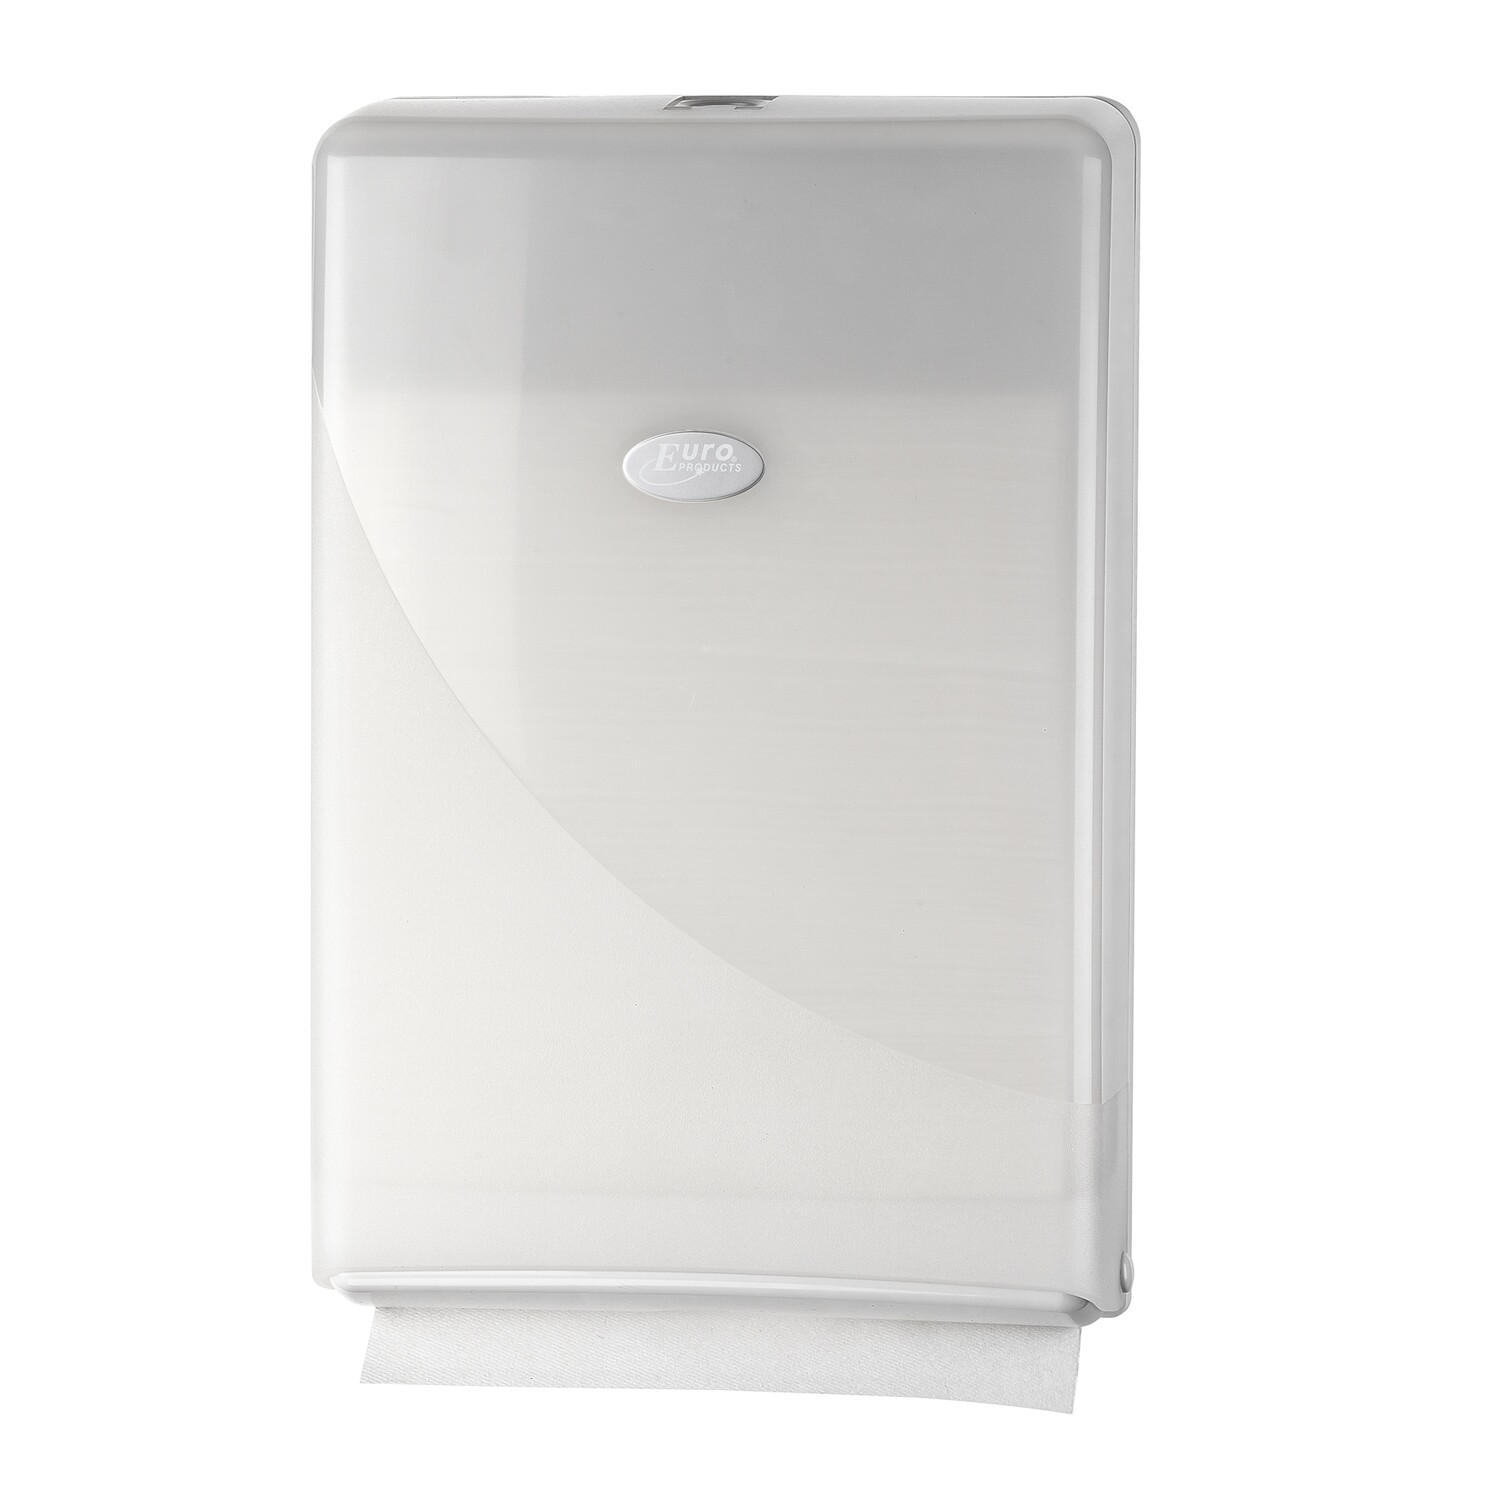 Euro Pearl White vouwhanddoekdispenser compact, verpakt per stuk